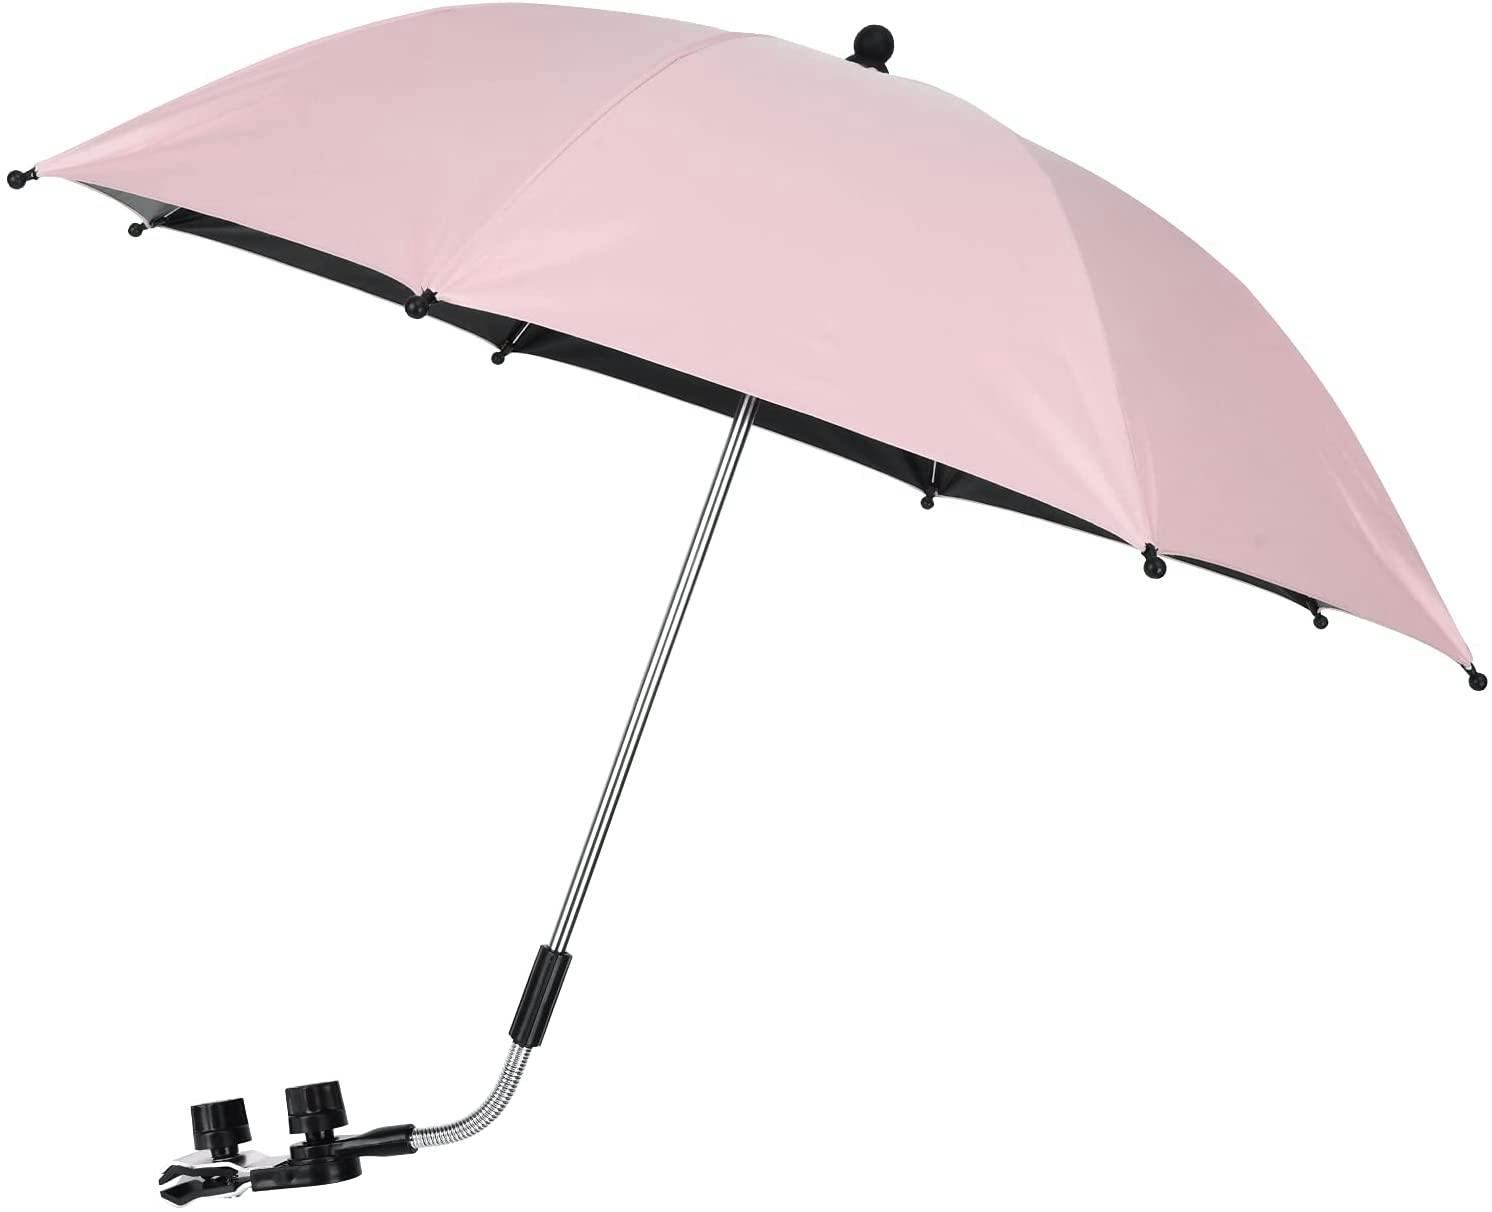 SaniMomo Stroller Parasol Clamp on Universal Beach Umbrella Sun Shade Shelter for Hiking Travel Camping Garden Patio 